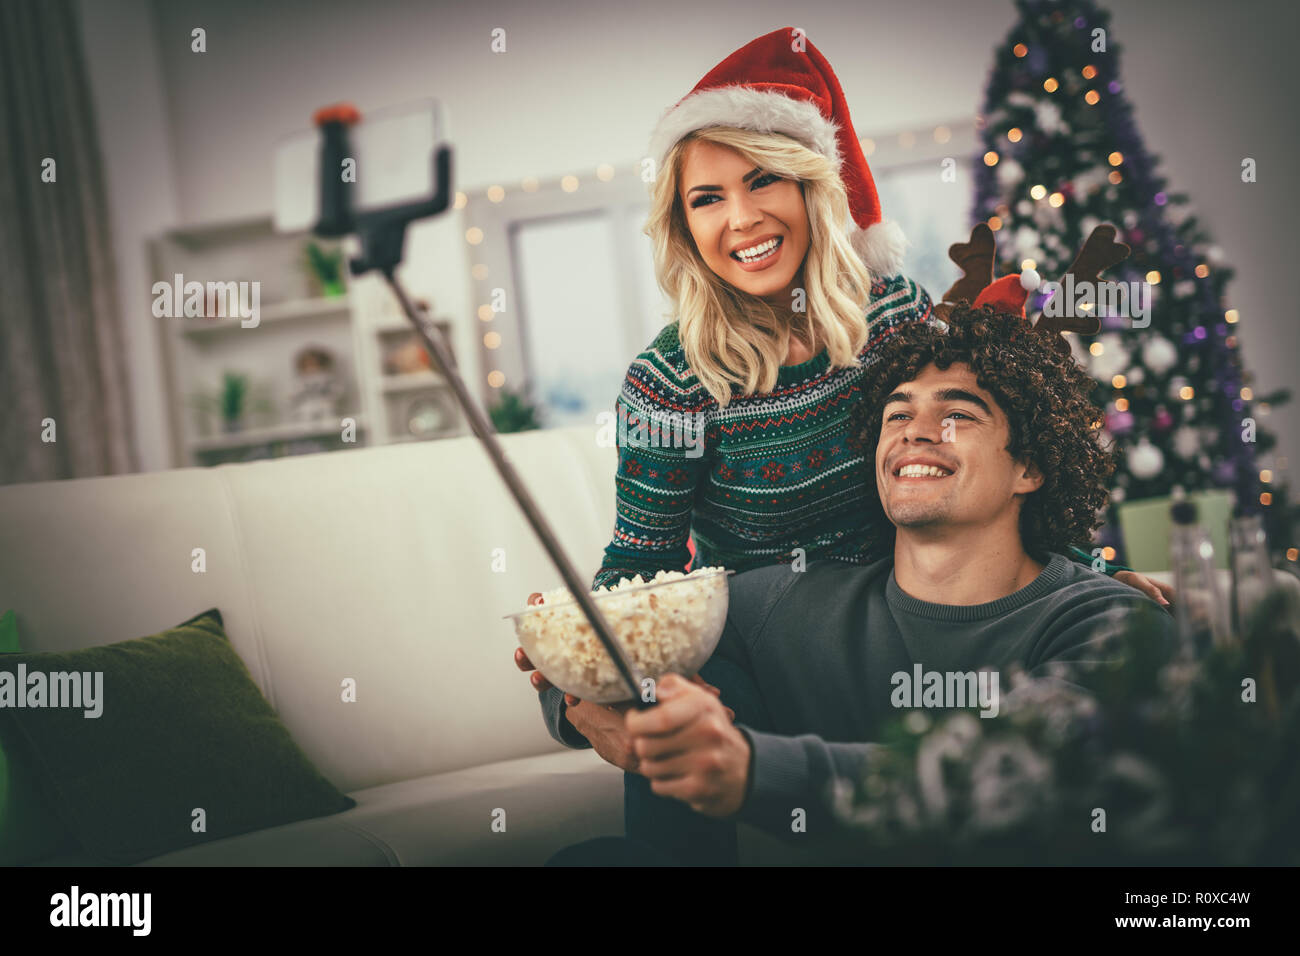 Paar in der gemütlichen warmen Pullover auf ein Weihnachten - Neujahr, lächeln und Spaß unter selfie und essen Popcorn. Stockfoto